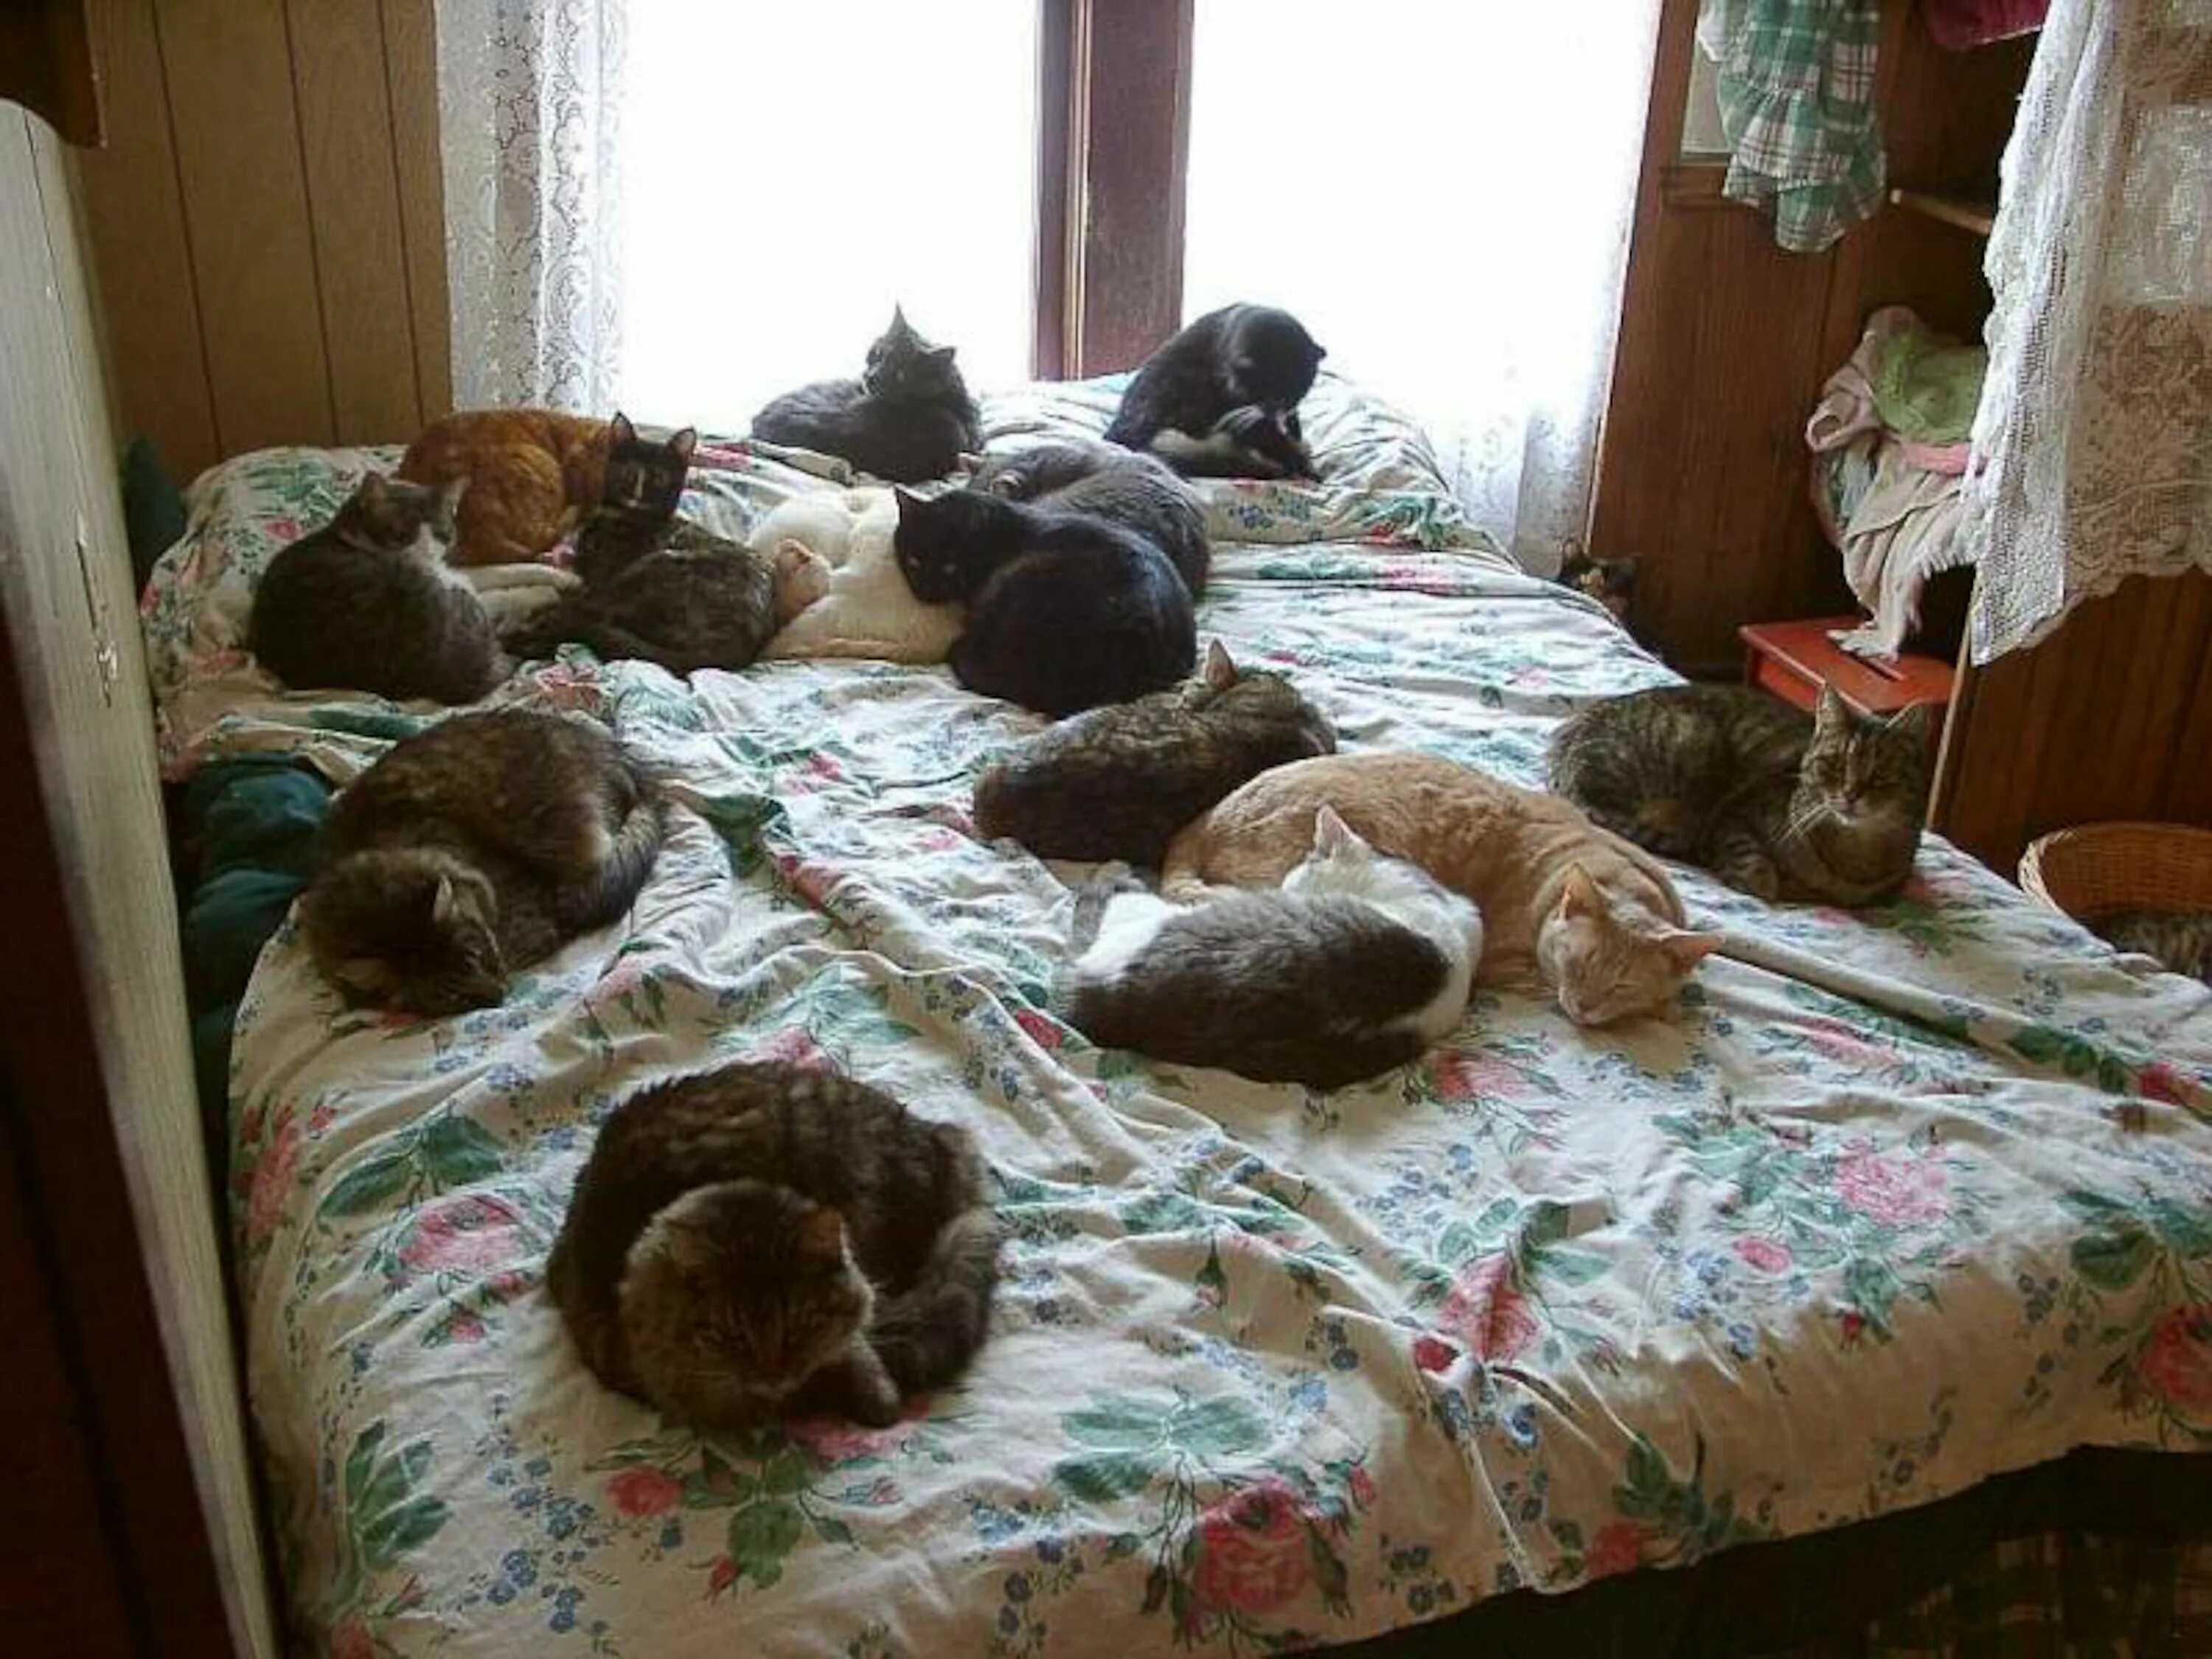 Съем 1 жил 1. Коты в квартире. Много котов на кровати. Много котов в квартире. Кот в кровати.